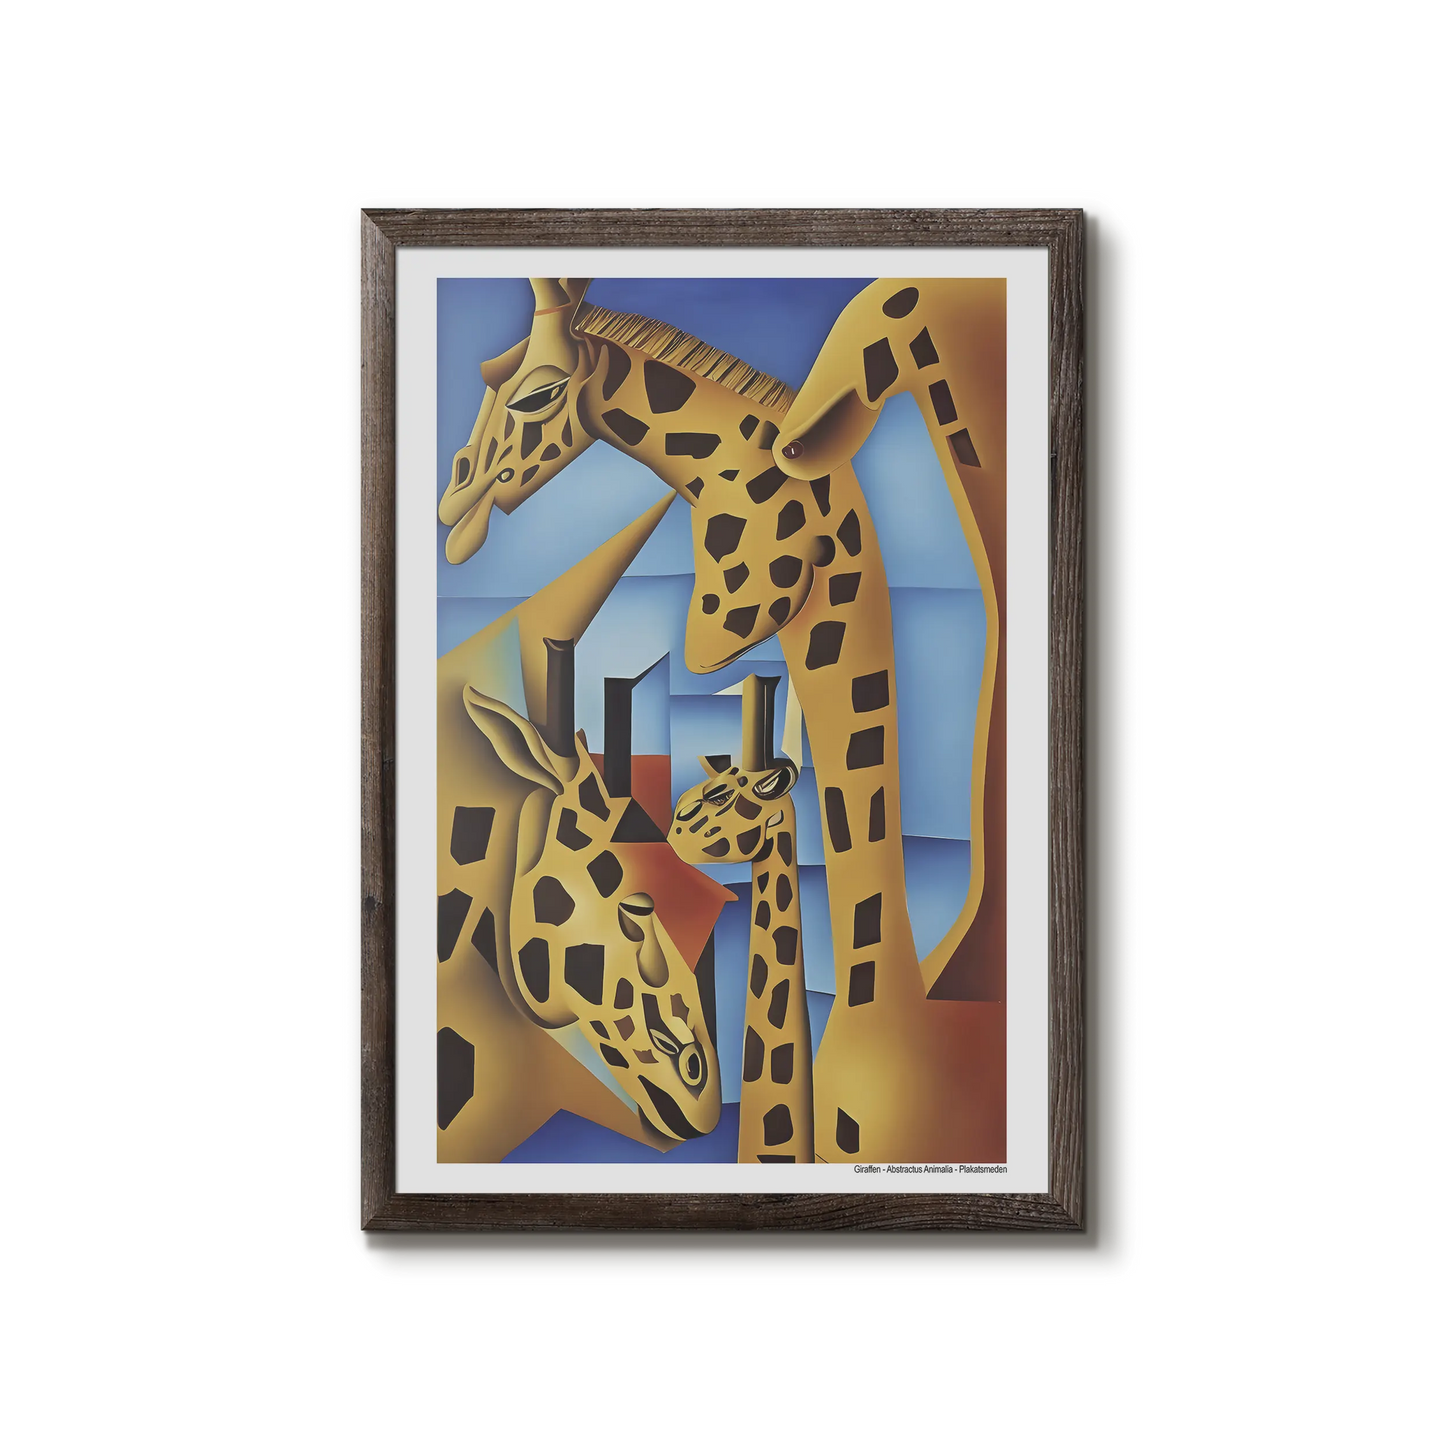 The giraffe (Giraffen)